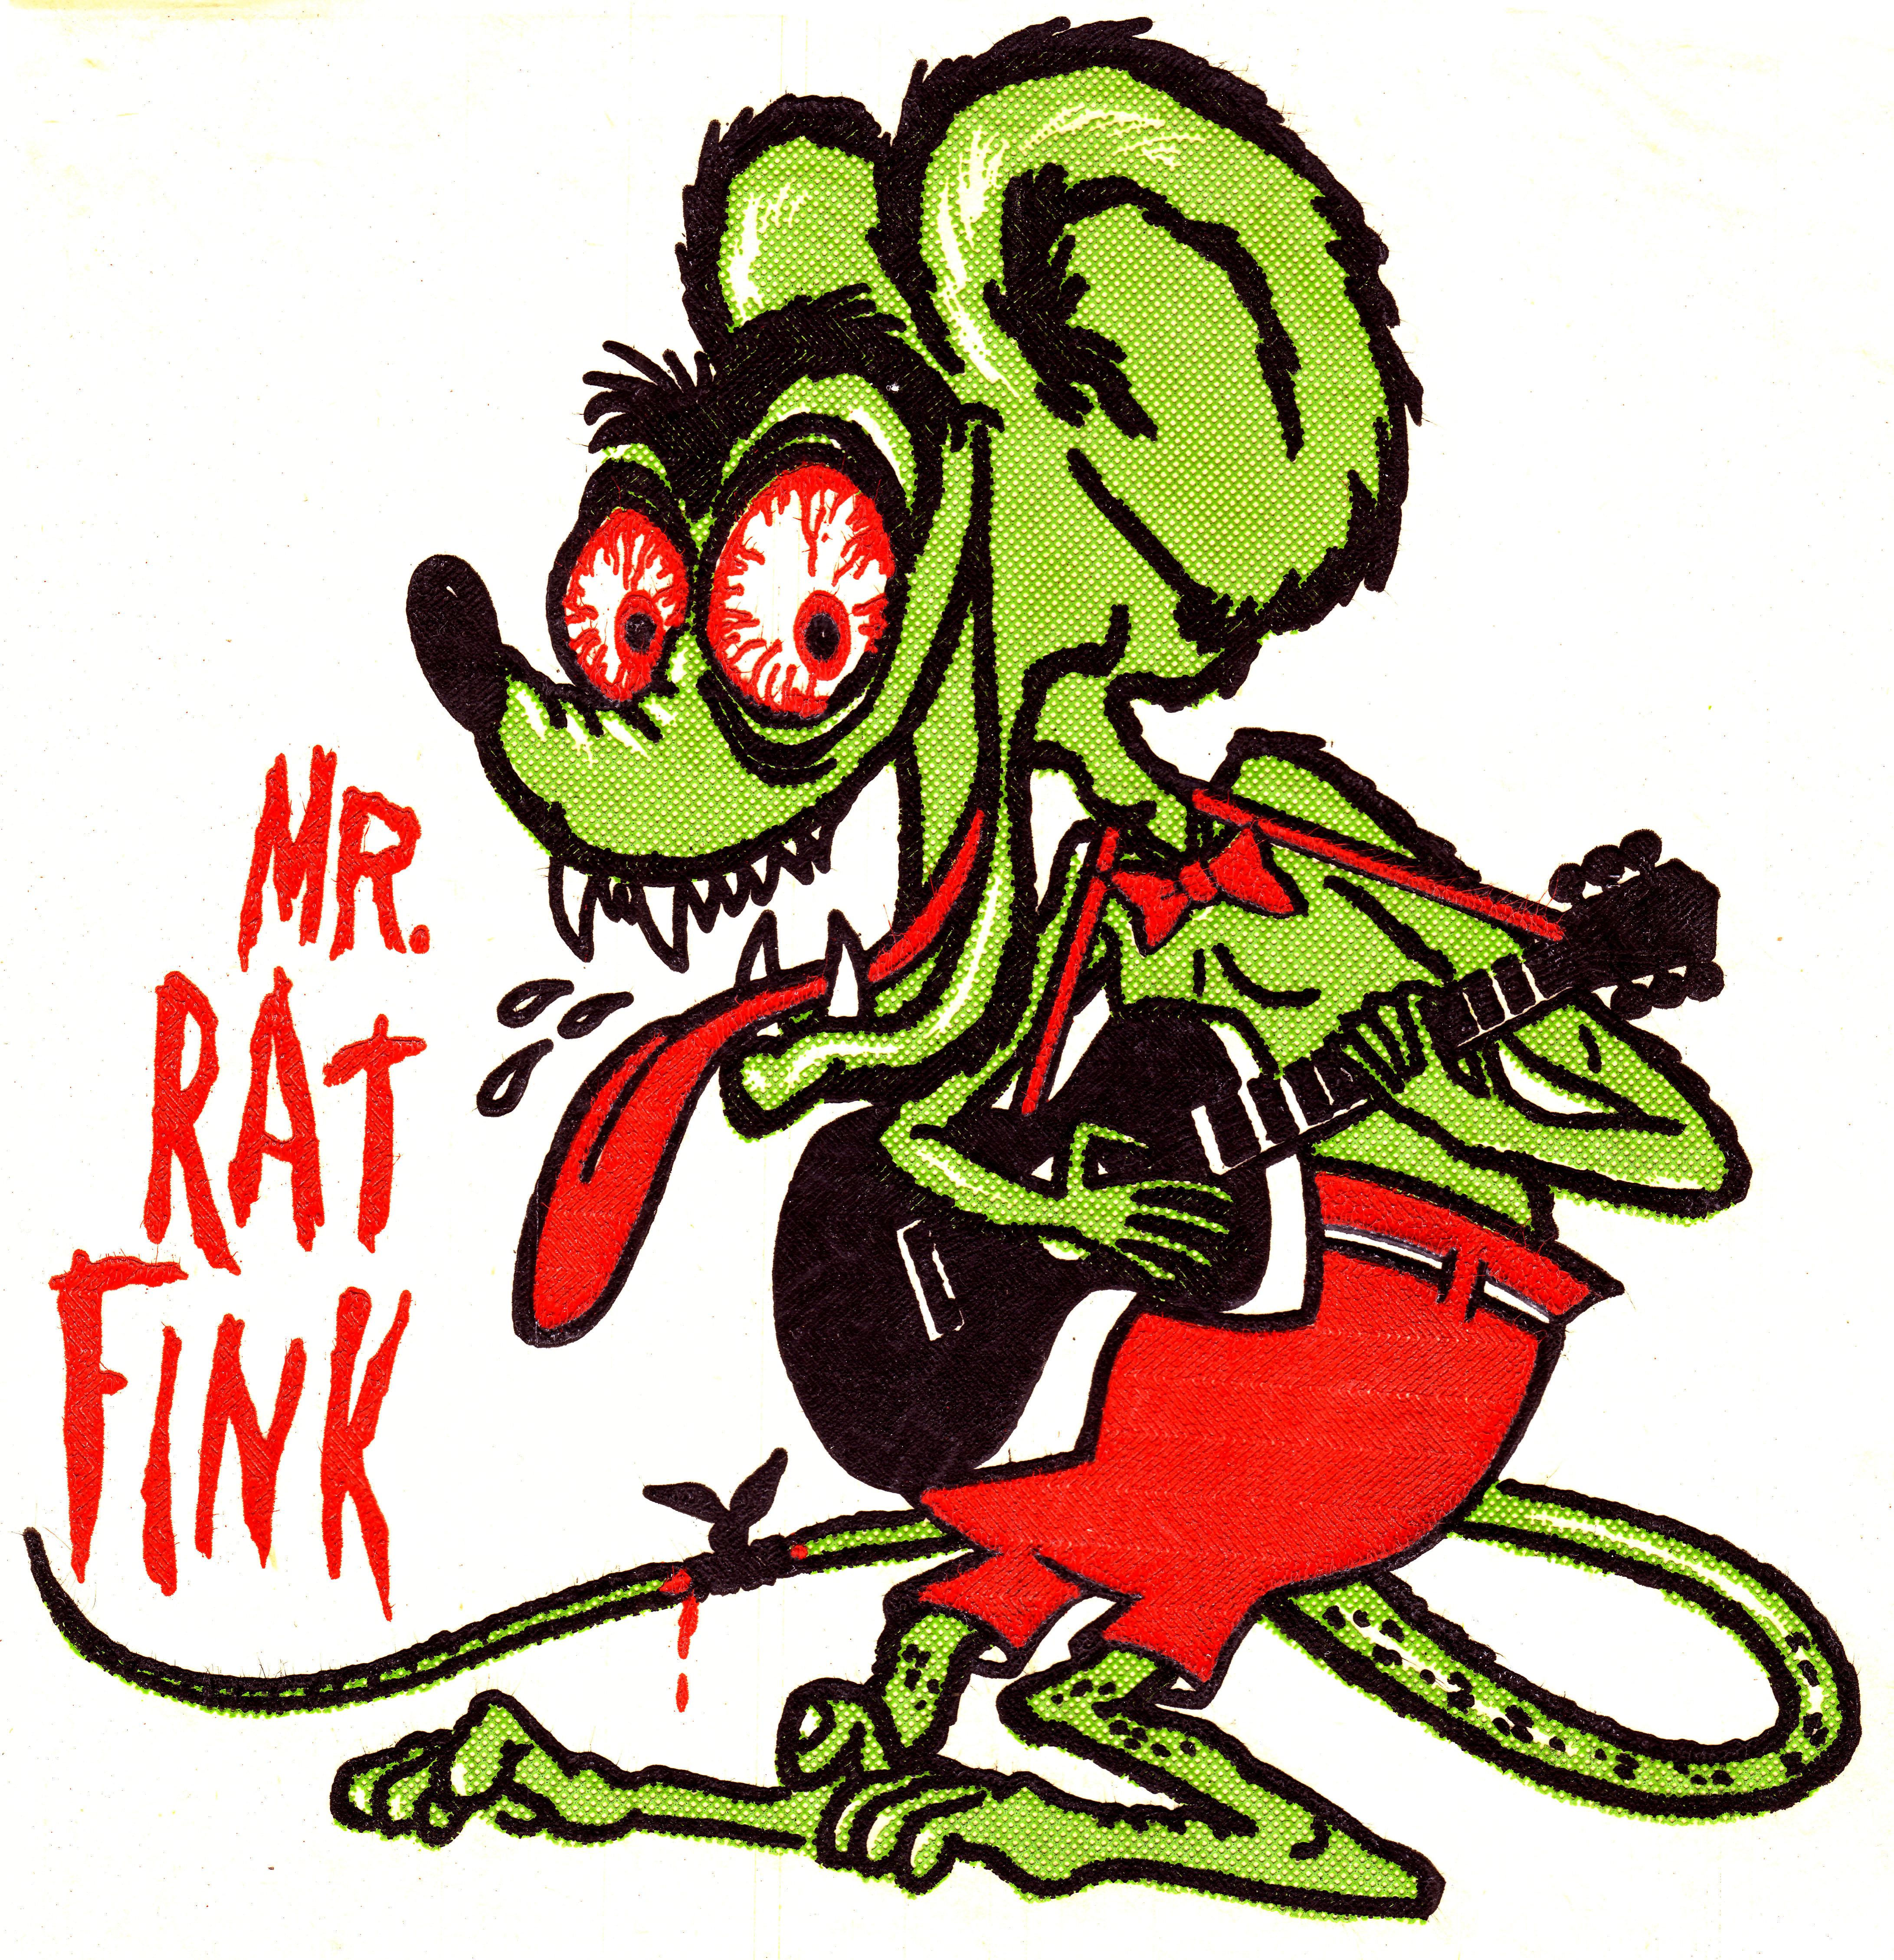 [69+] Rat Fink Wallpaper